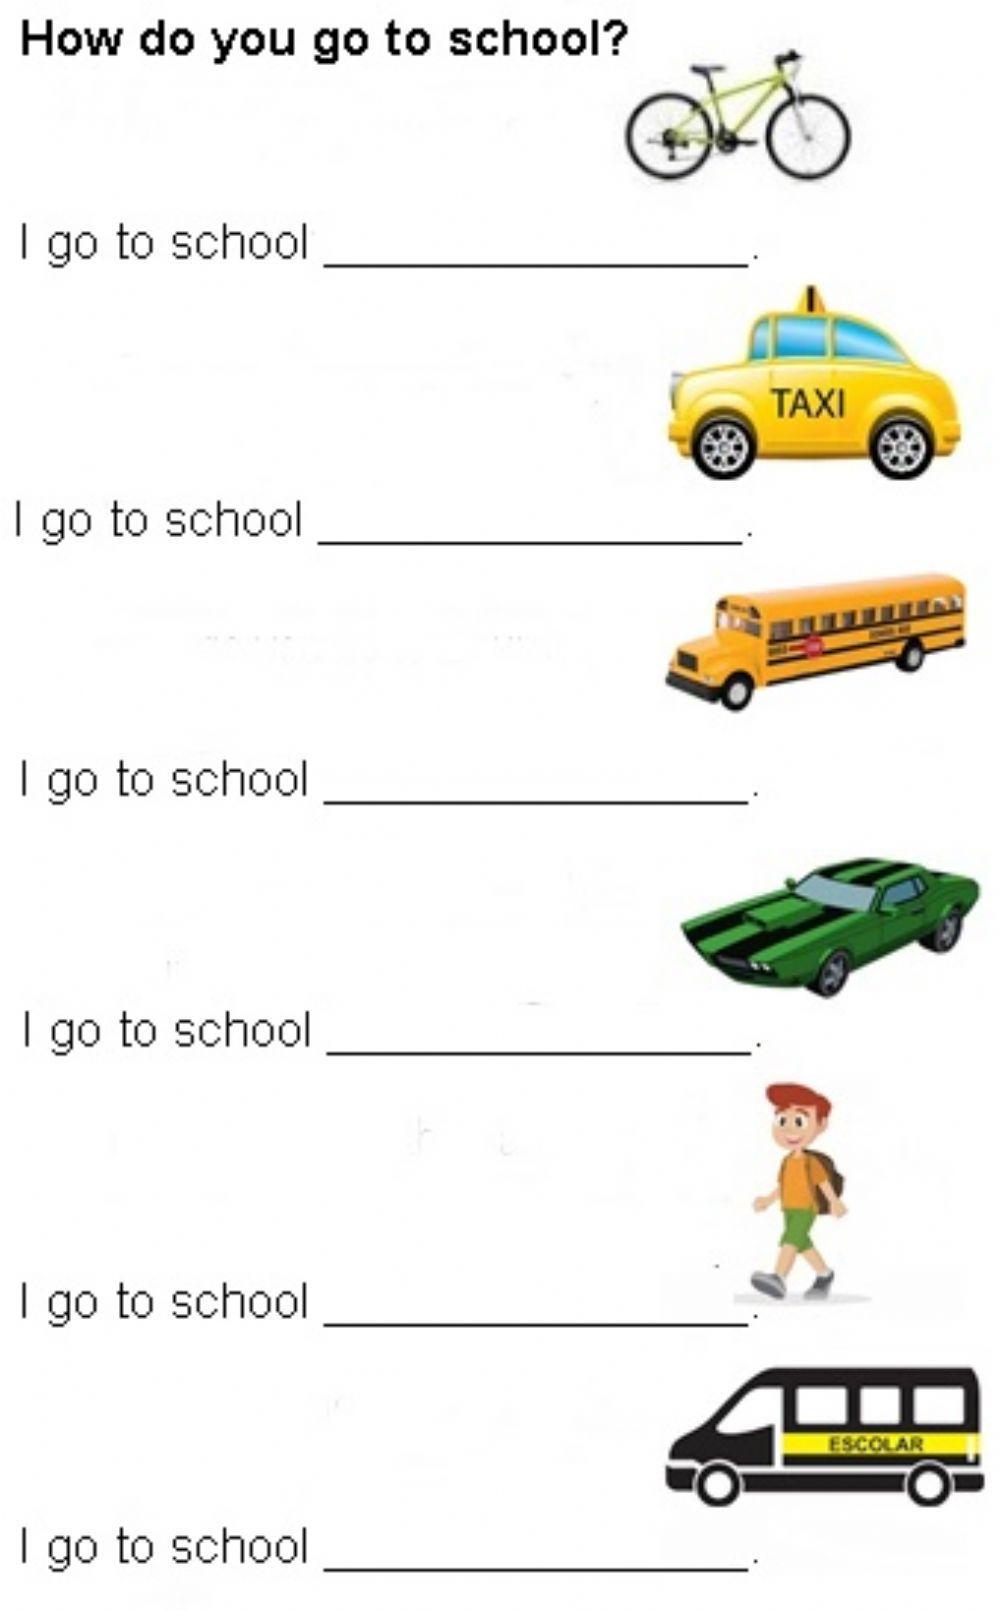 How do you go to school?